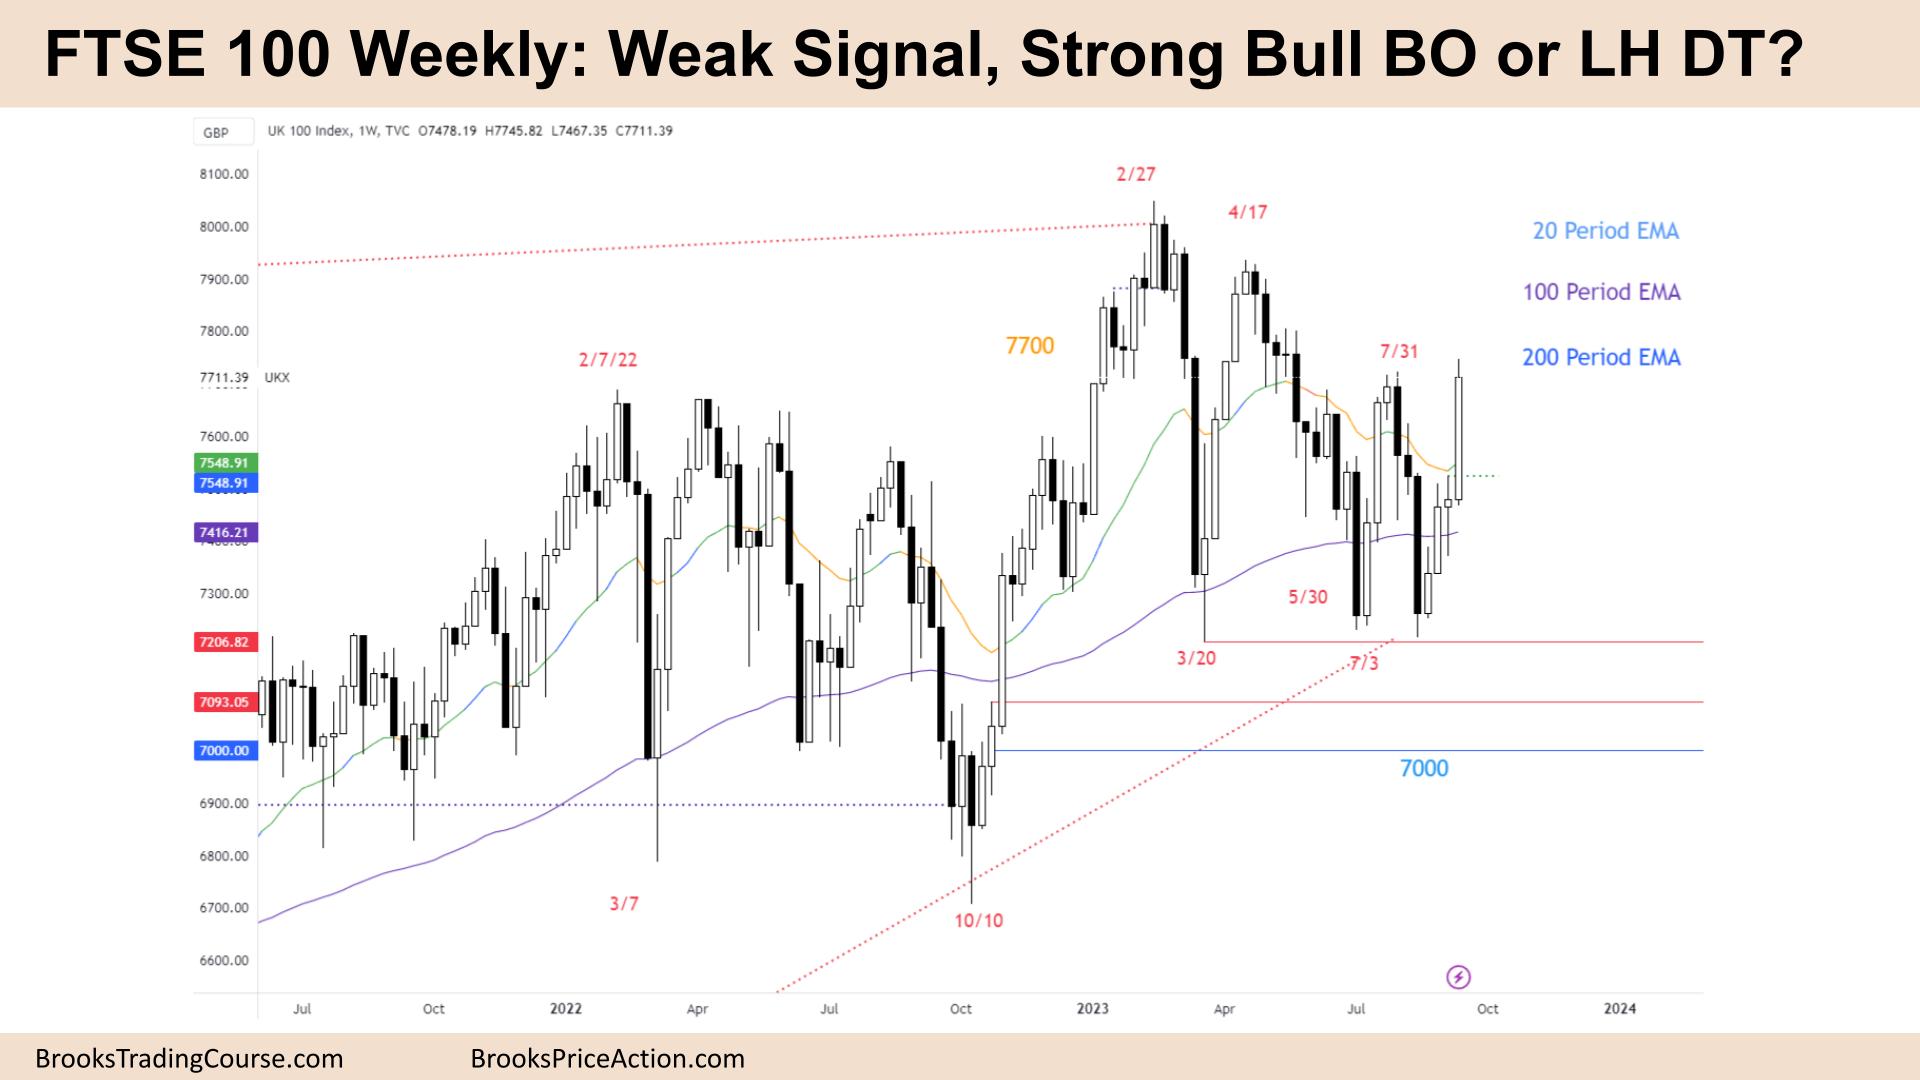 FTSE 100 Weak Signal, Strong Bull BO or LH DT